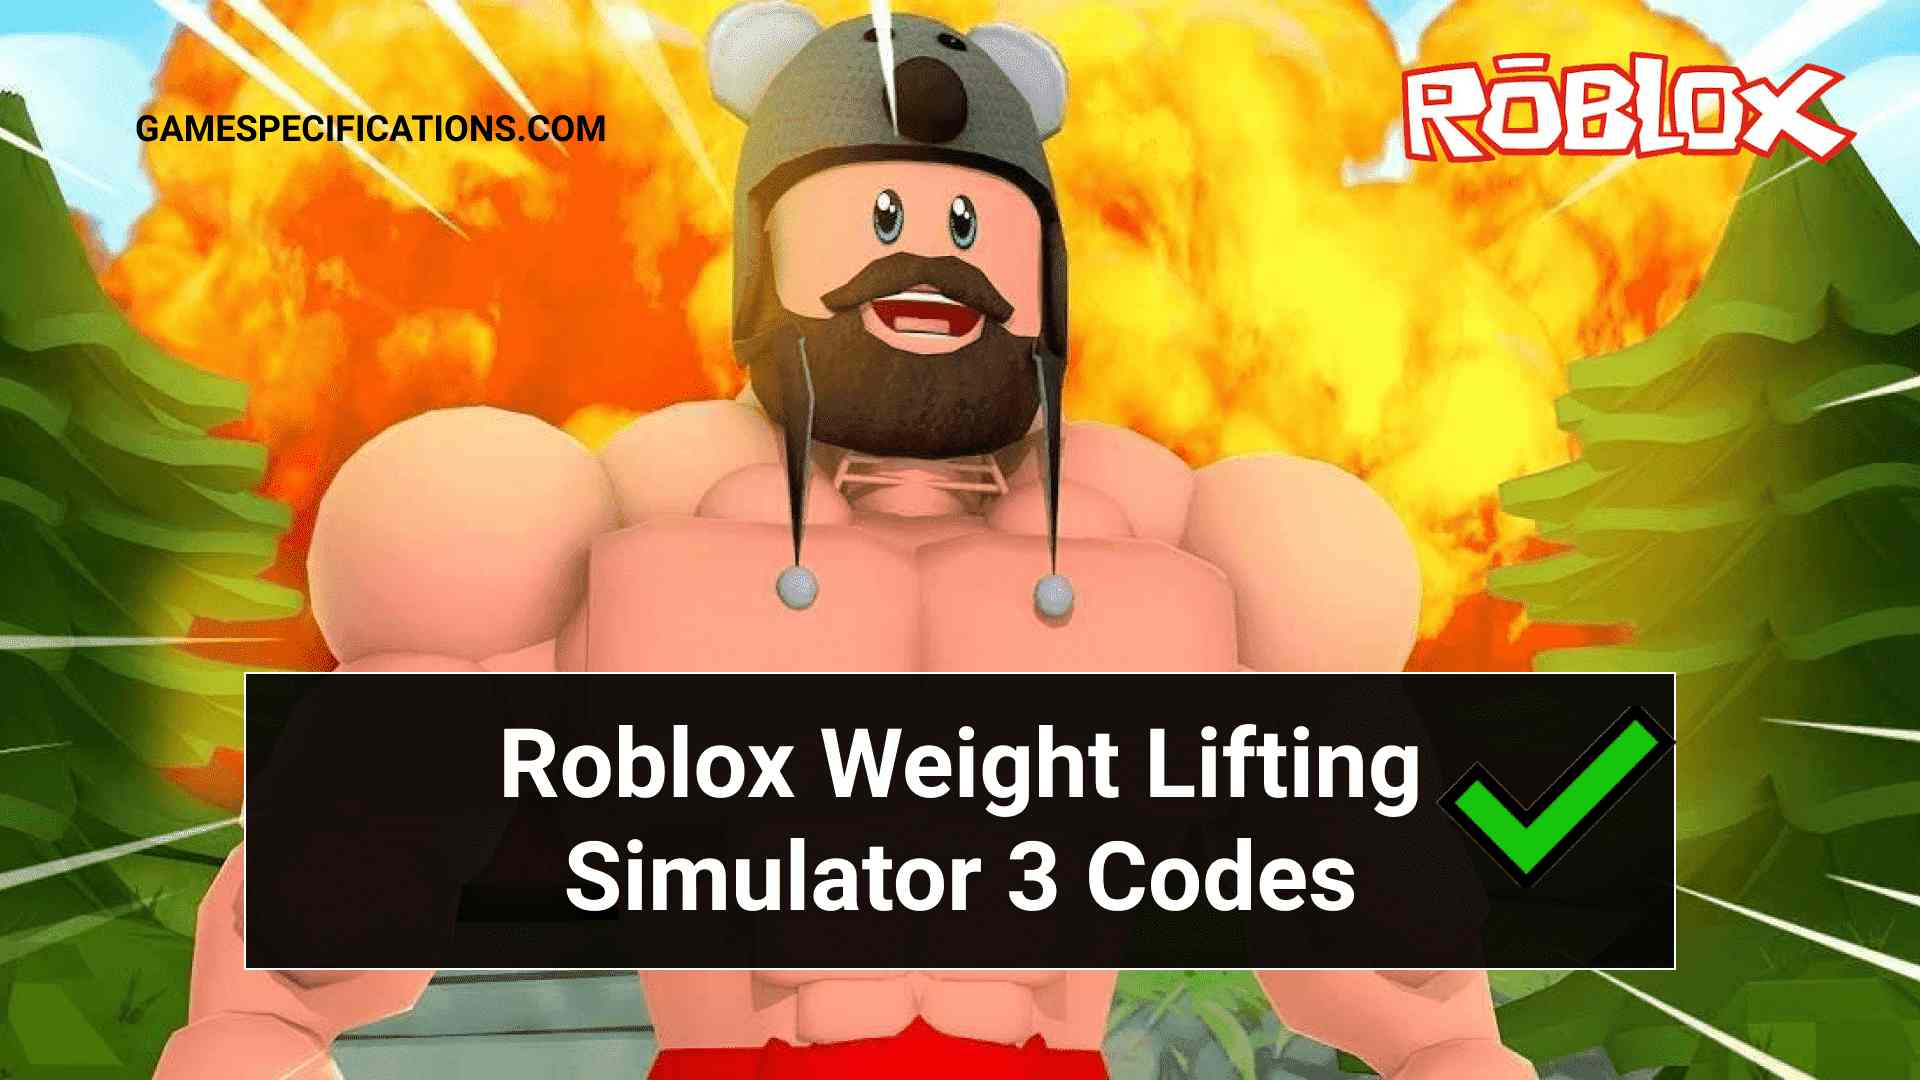 17 Roblox Weight Lifting Simulator 3 Codes July 2021 Game Specifications - lifting simulator roblox